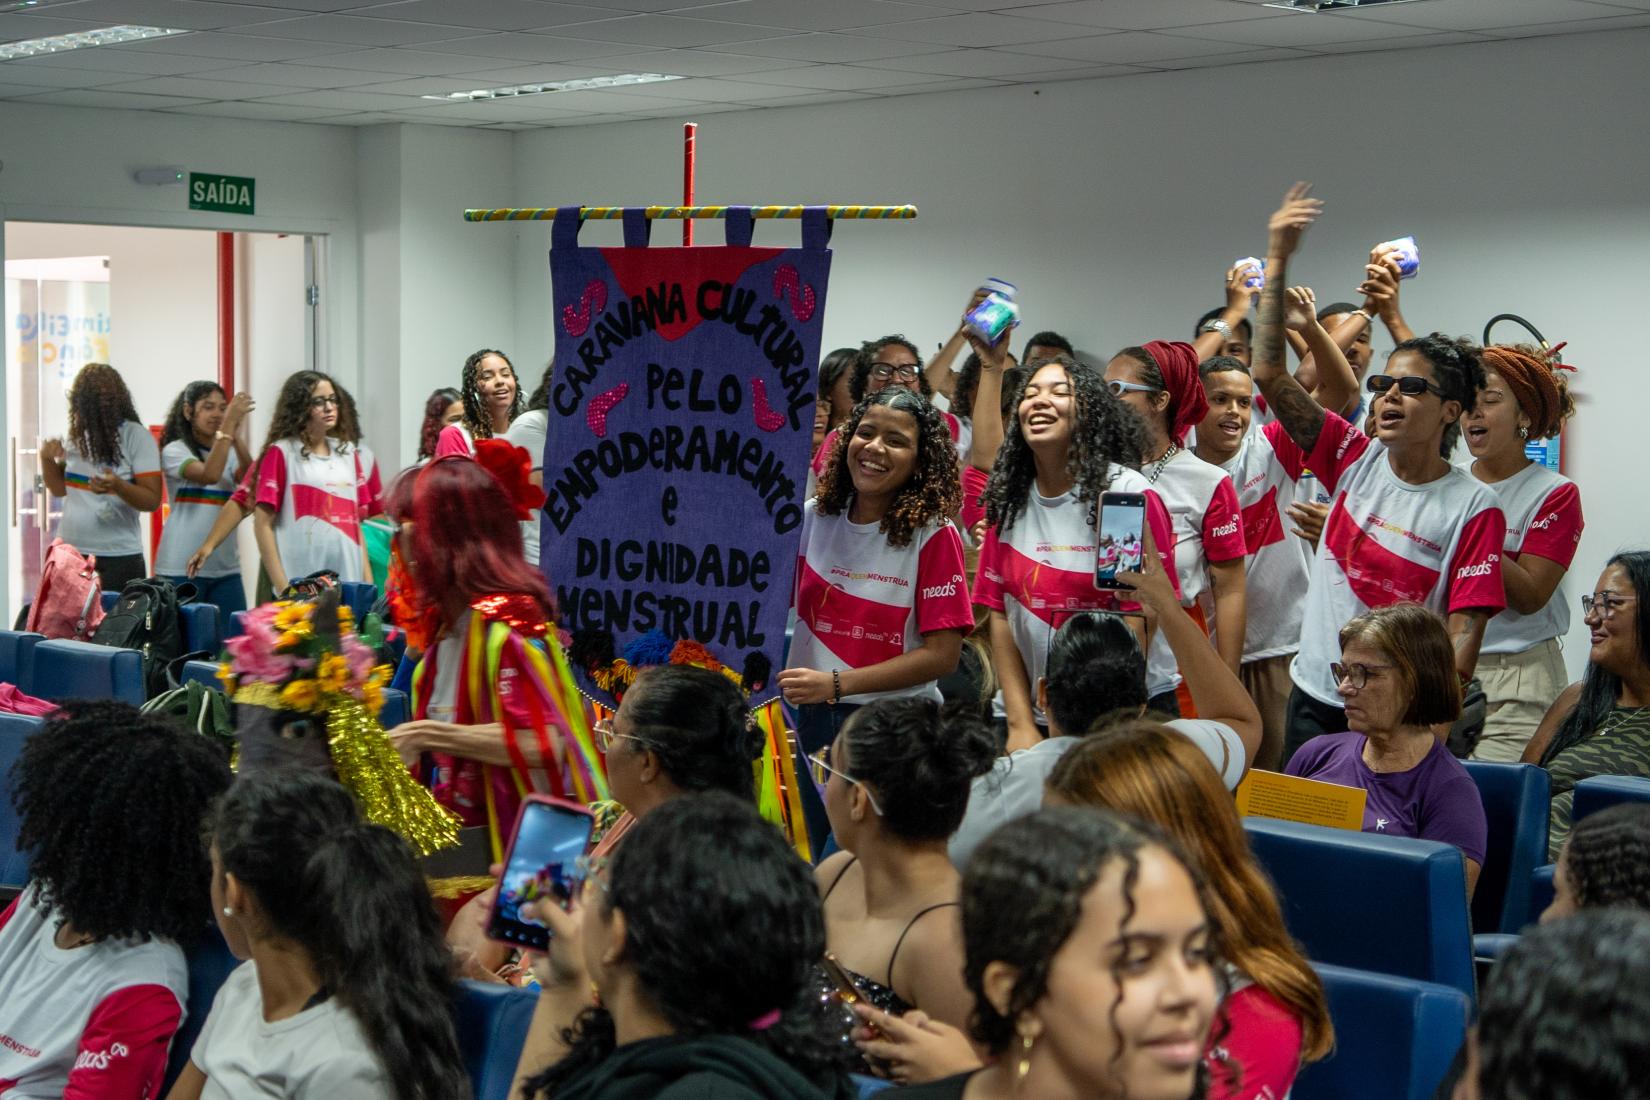 Mais de 1.200 estudantes do ensino Fundamental e Médio participaram da Caravana Cultural pelo Empoderamento e Dignidade Menstrual, iniciativa do UNICEF e parceiros